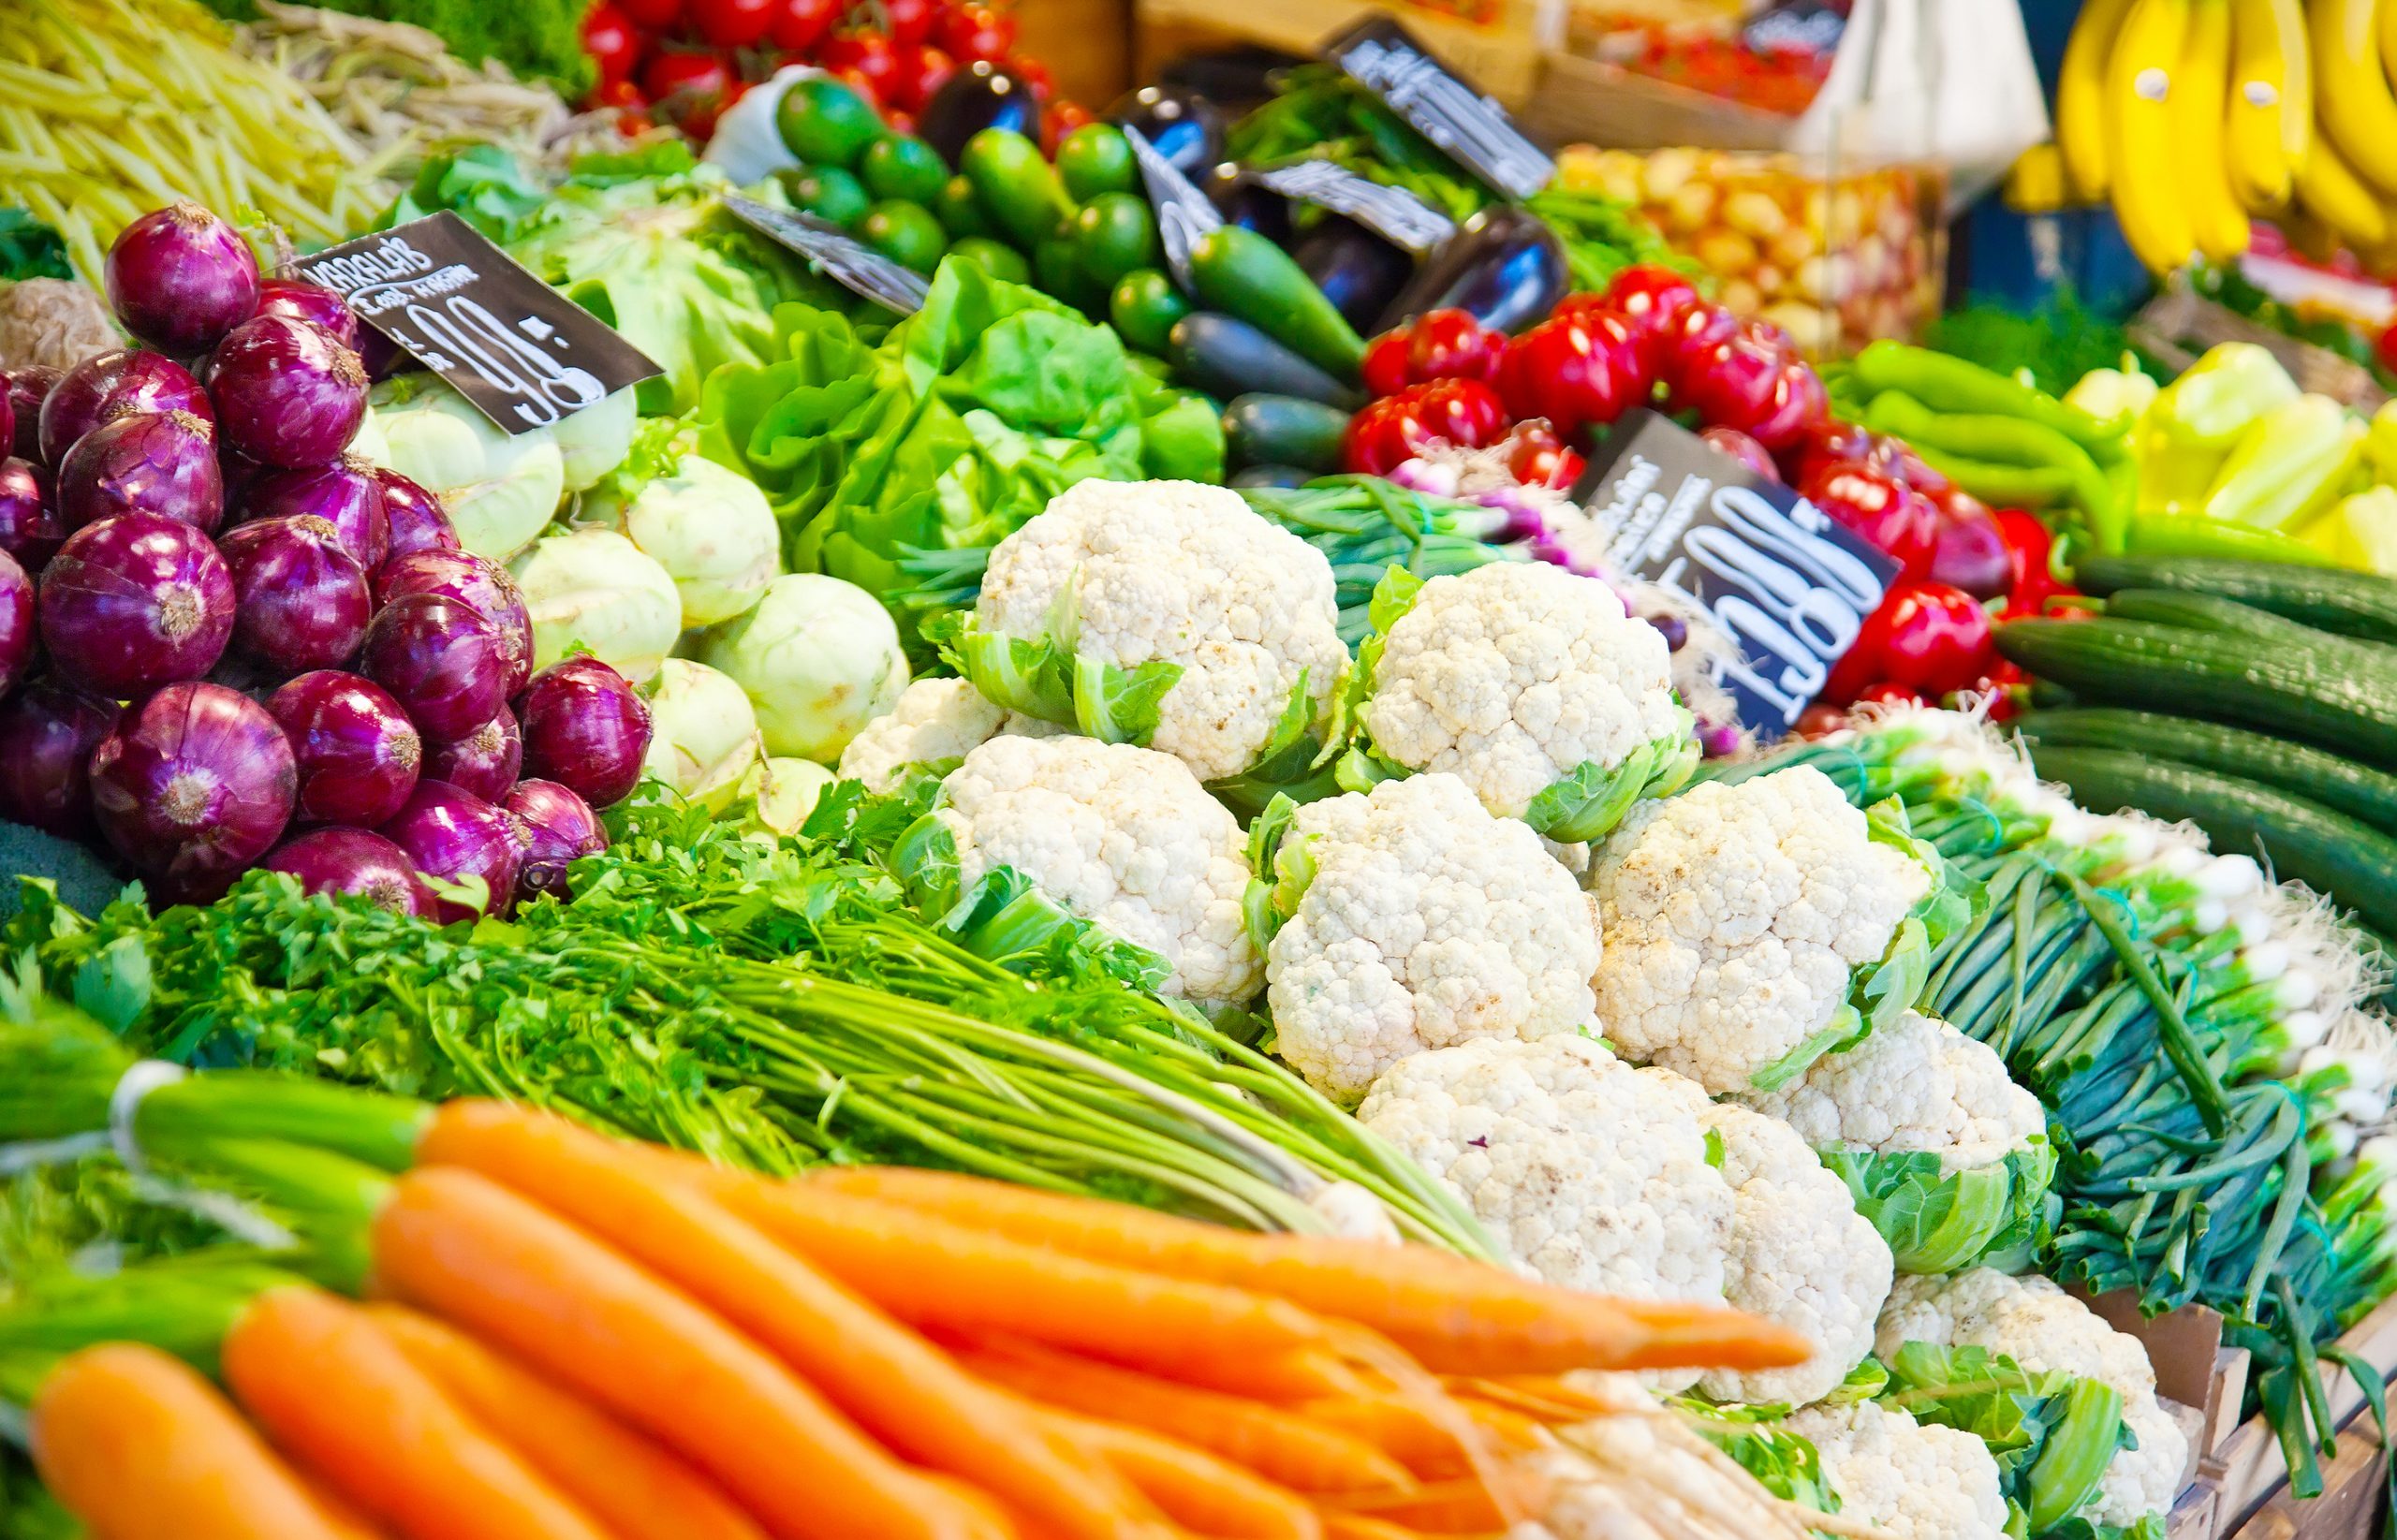 Vegetable products. Овощи и фрукты. Продукты овощи. Овощная продукция. Плодоовощные товары.